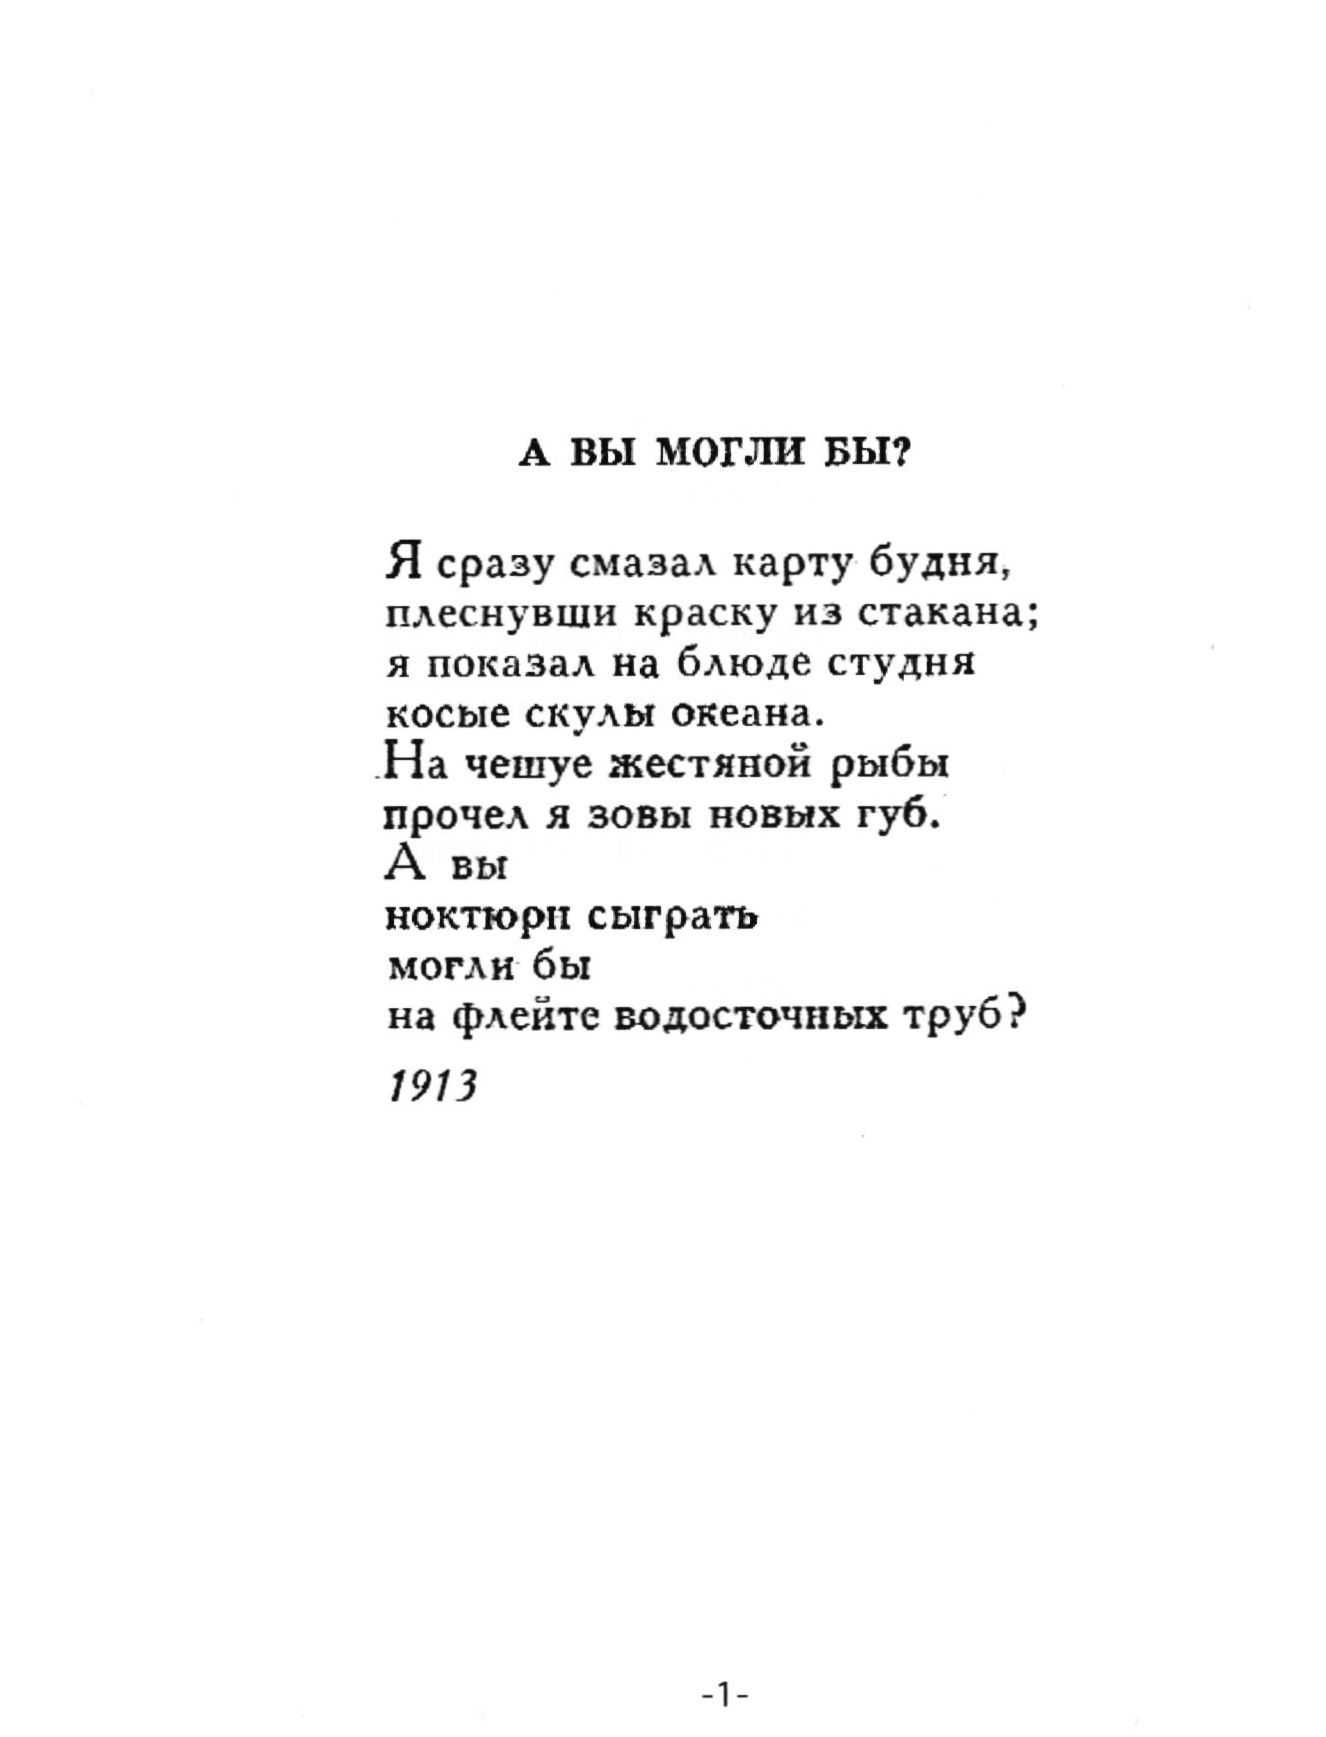 Маяковский. владимир. стихотворения (1917-1921) (стр. 3) - modernlib.net